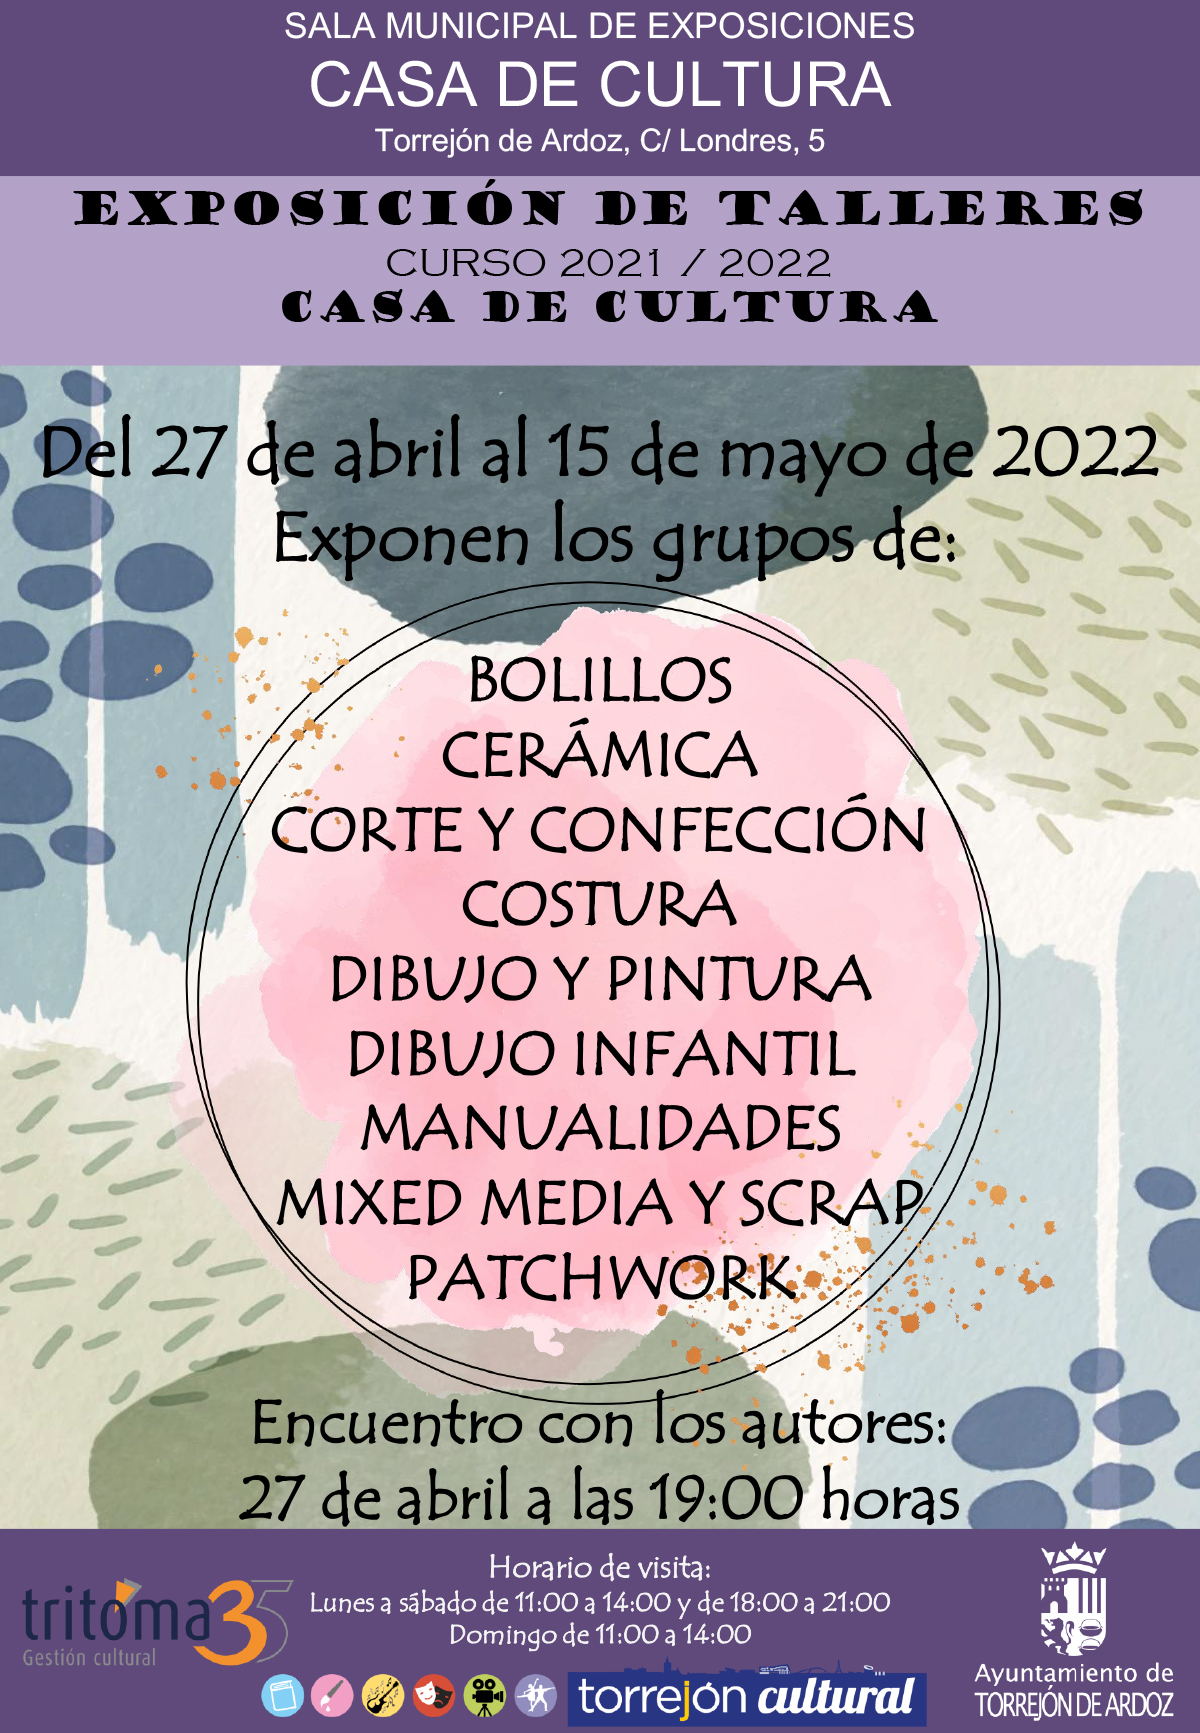 Exposición de talleres de los cursos de la Casa de Cultura